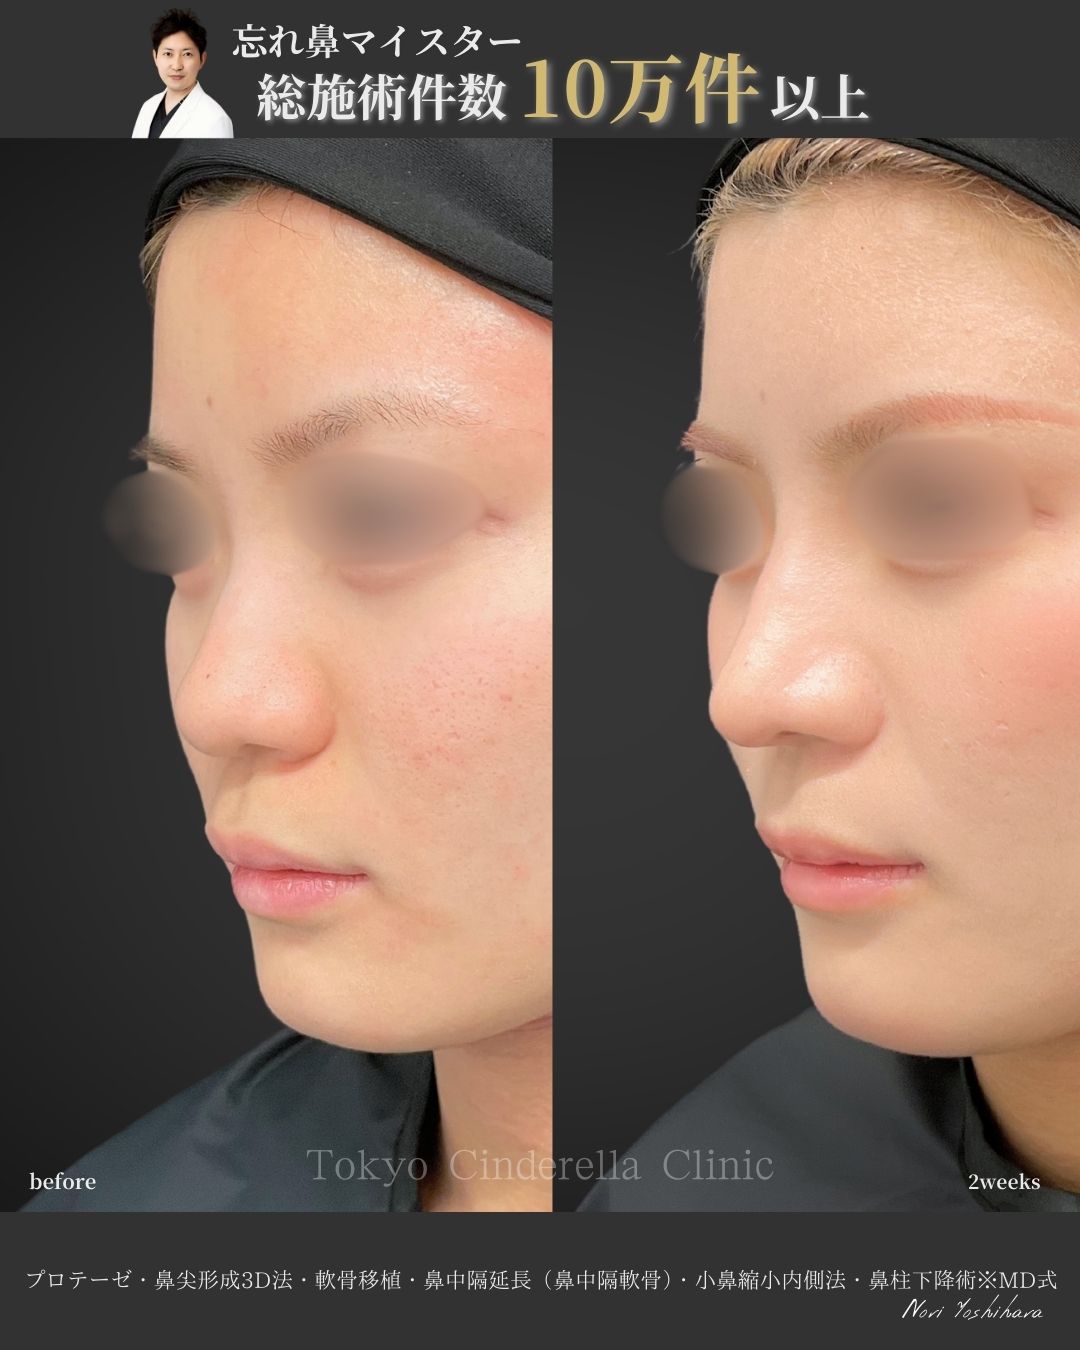 プロテーゼと鼻尖形成3D法と軟骨移植と小鼻縮小内側法と鼻柱下降を受けた女性の症例写真